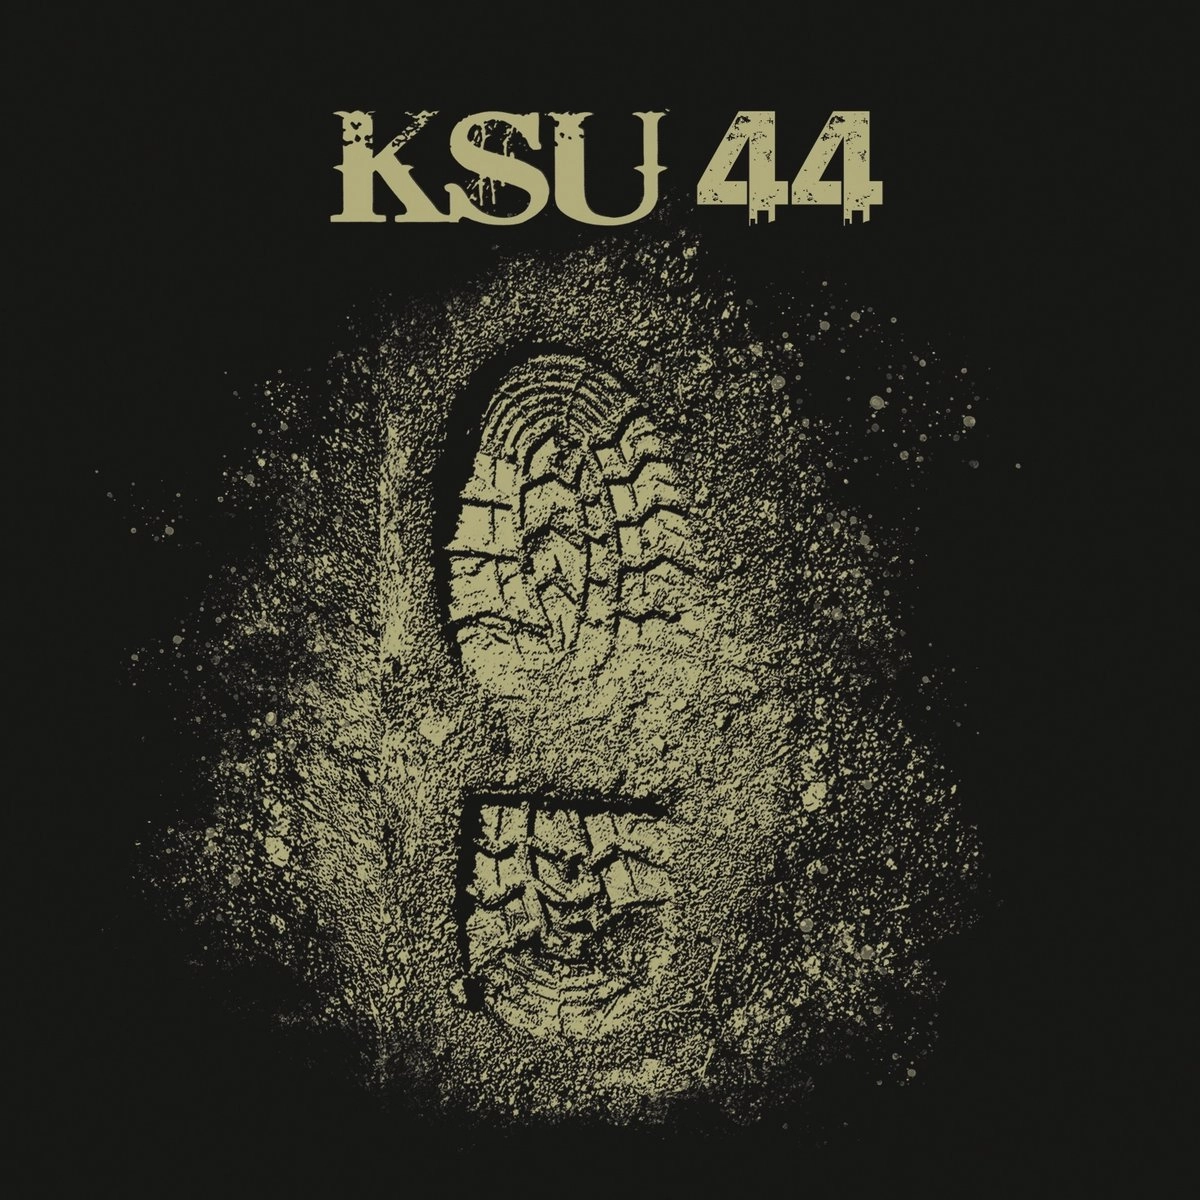 KSU 44